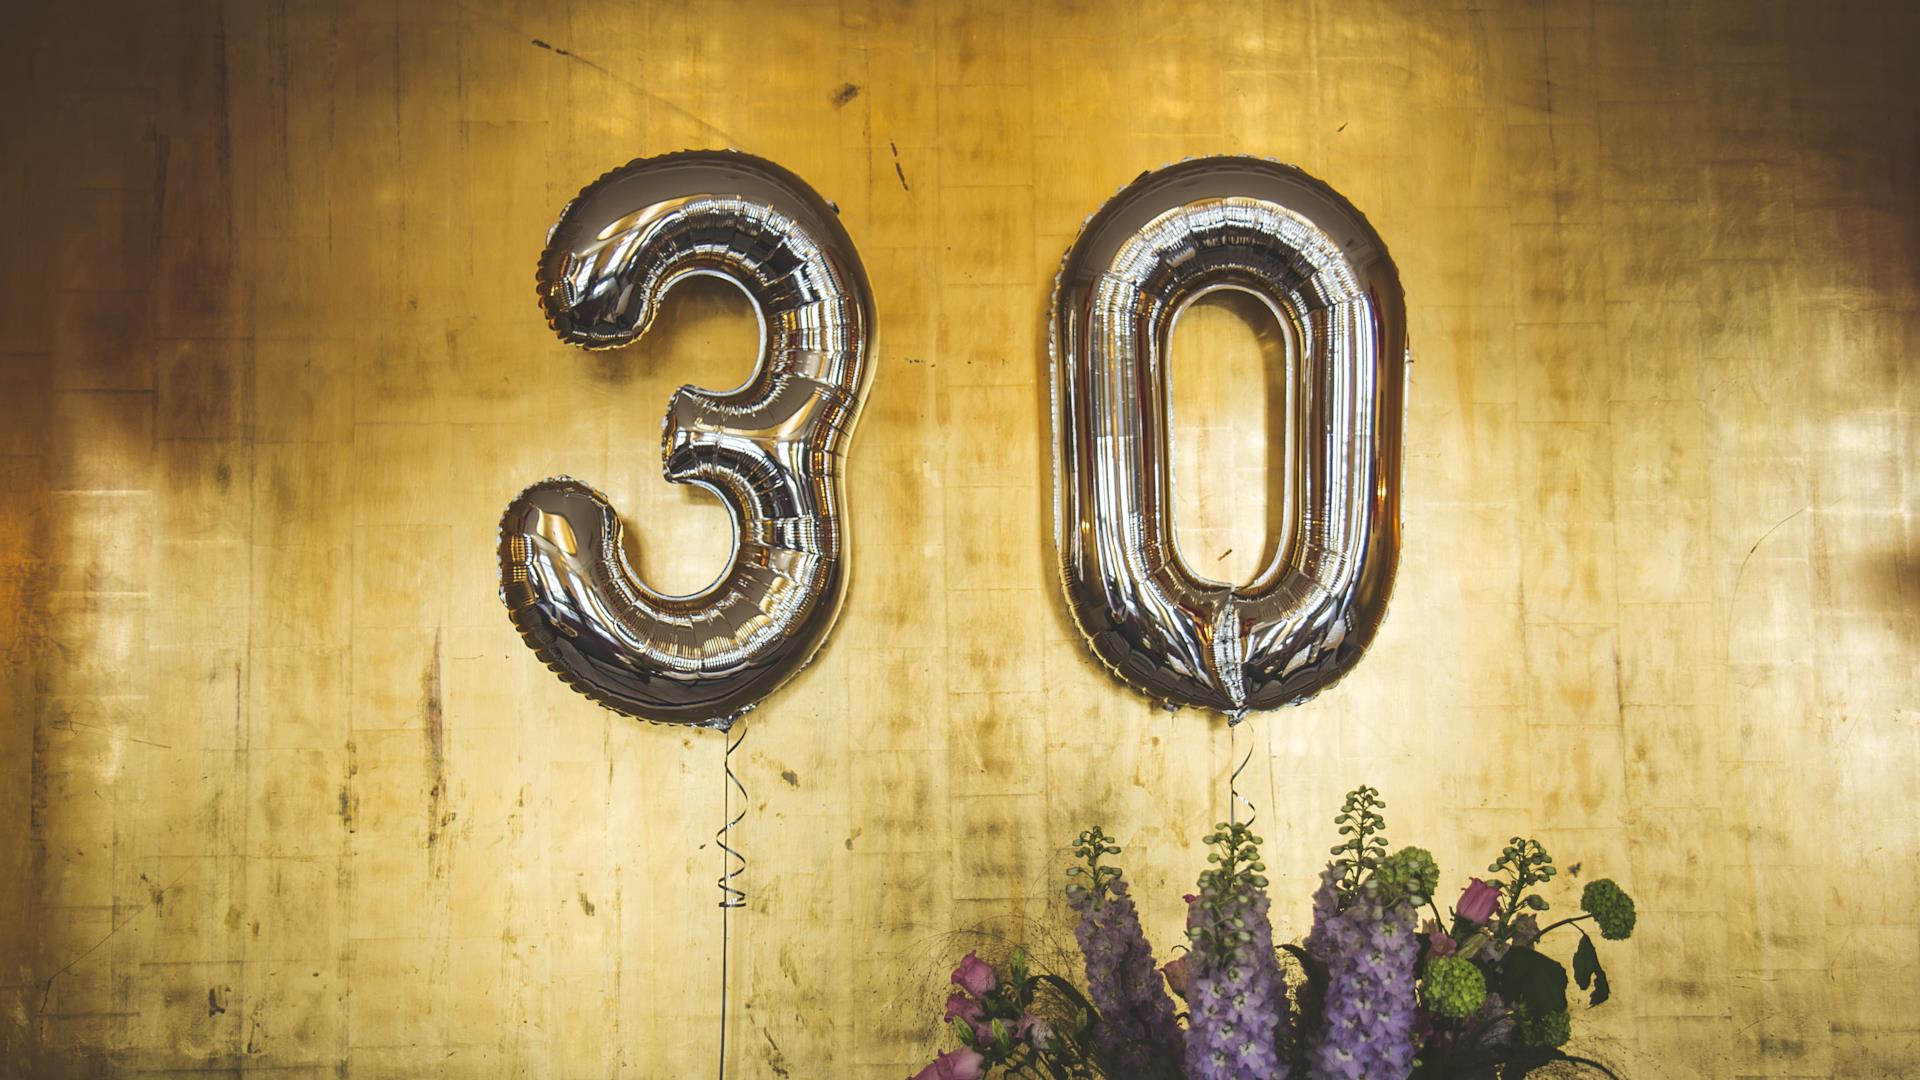 Frasi di buon compleanno per i 30 anni: i migliori messaggi d'auguri - fem